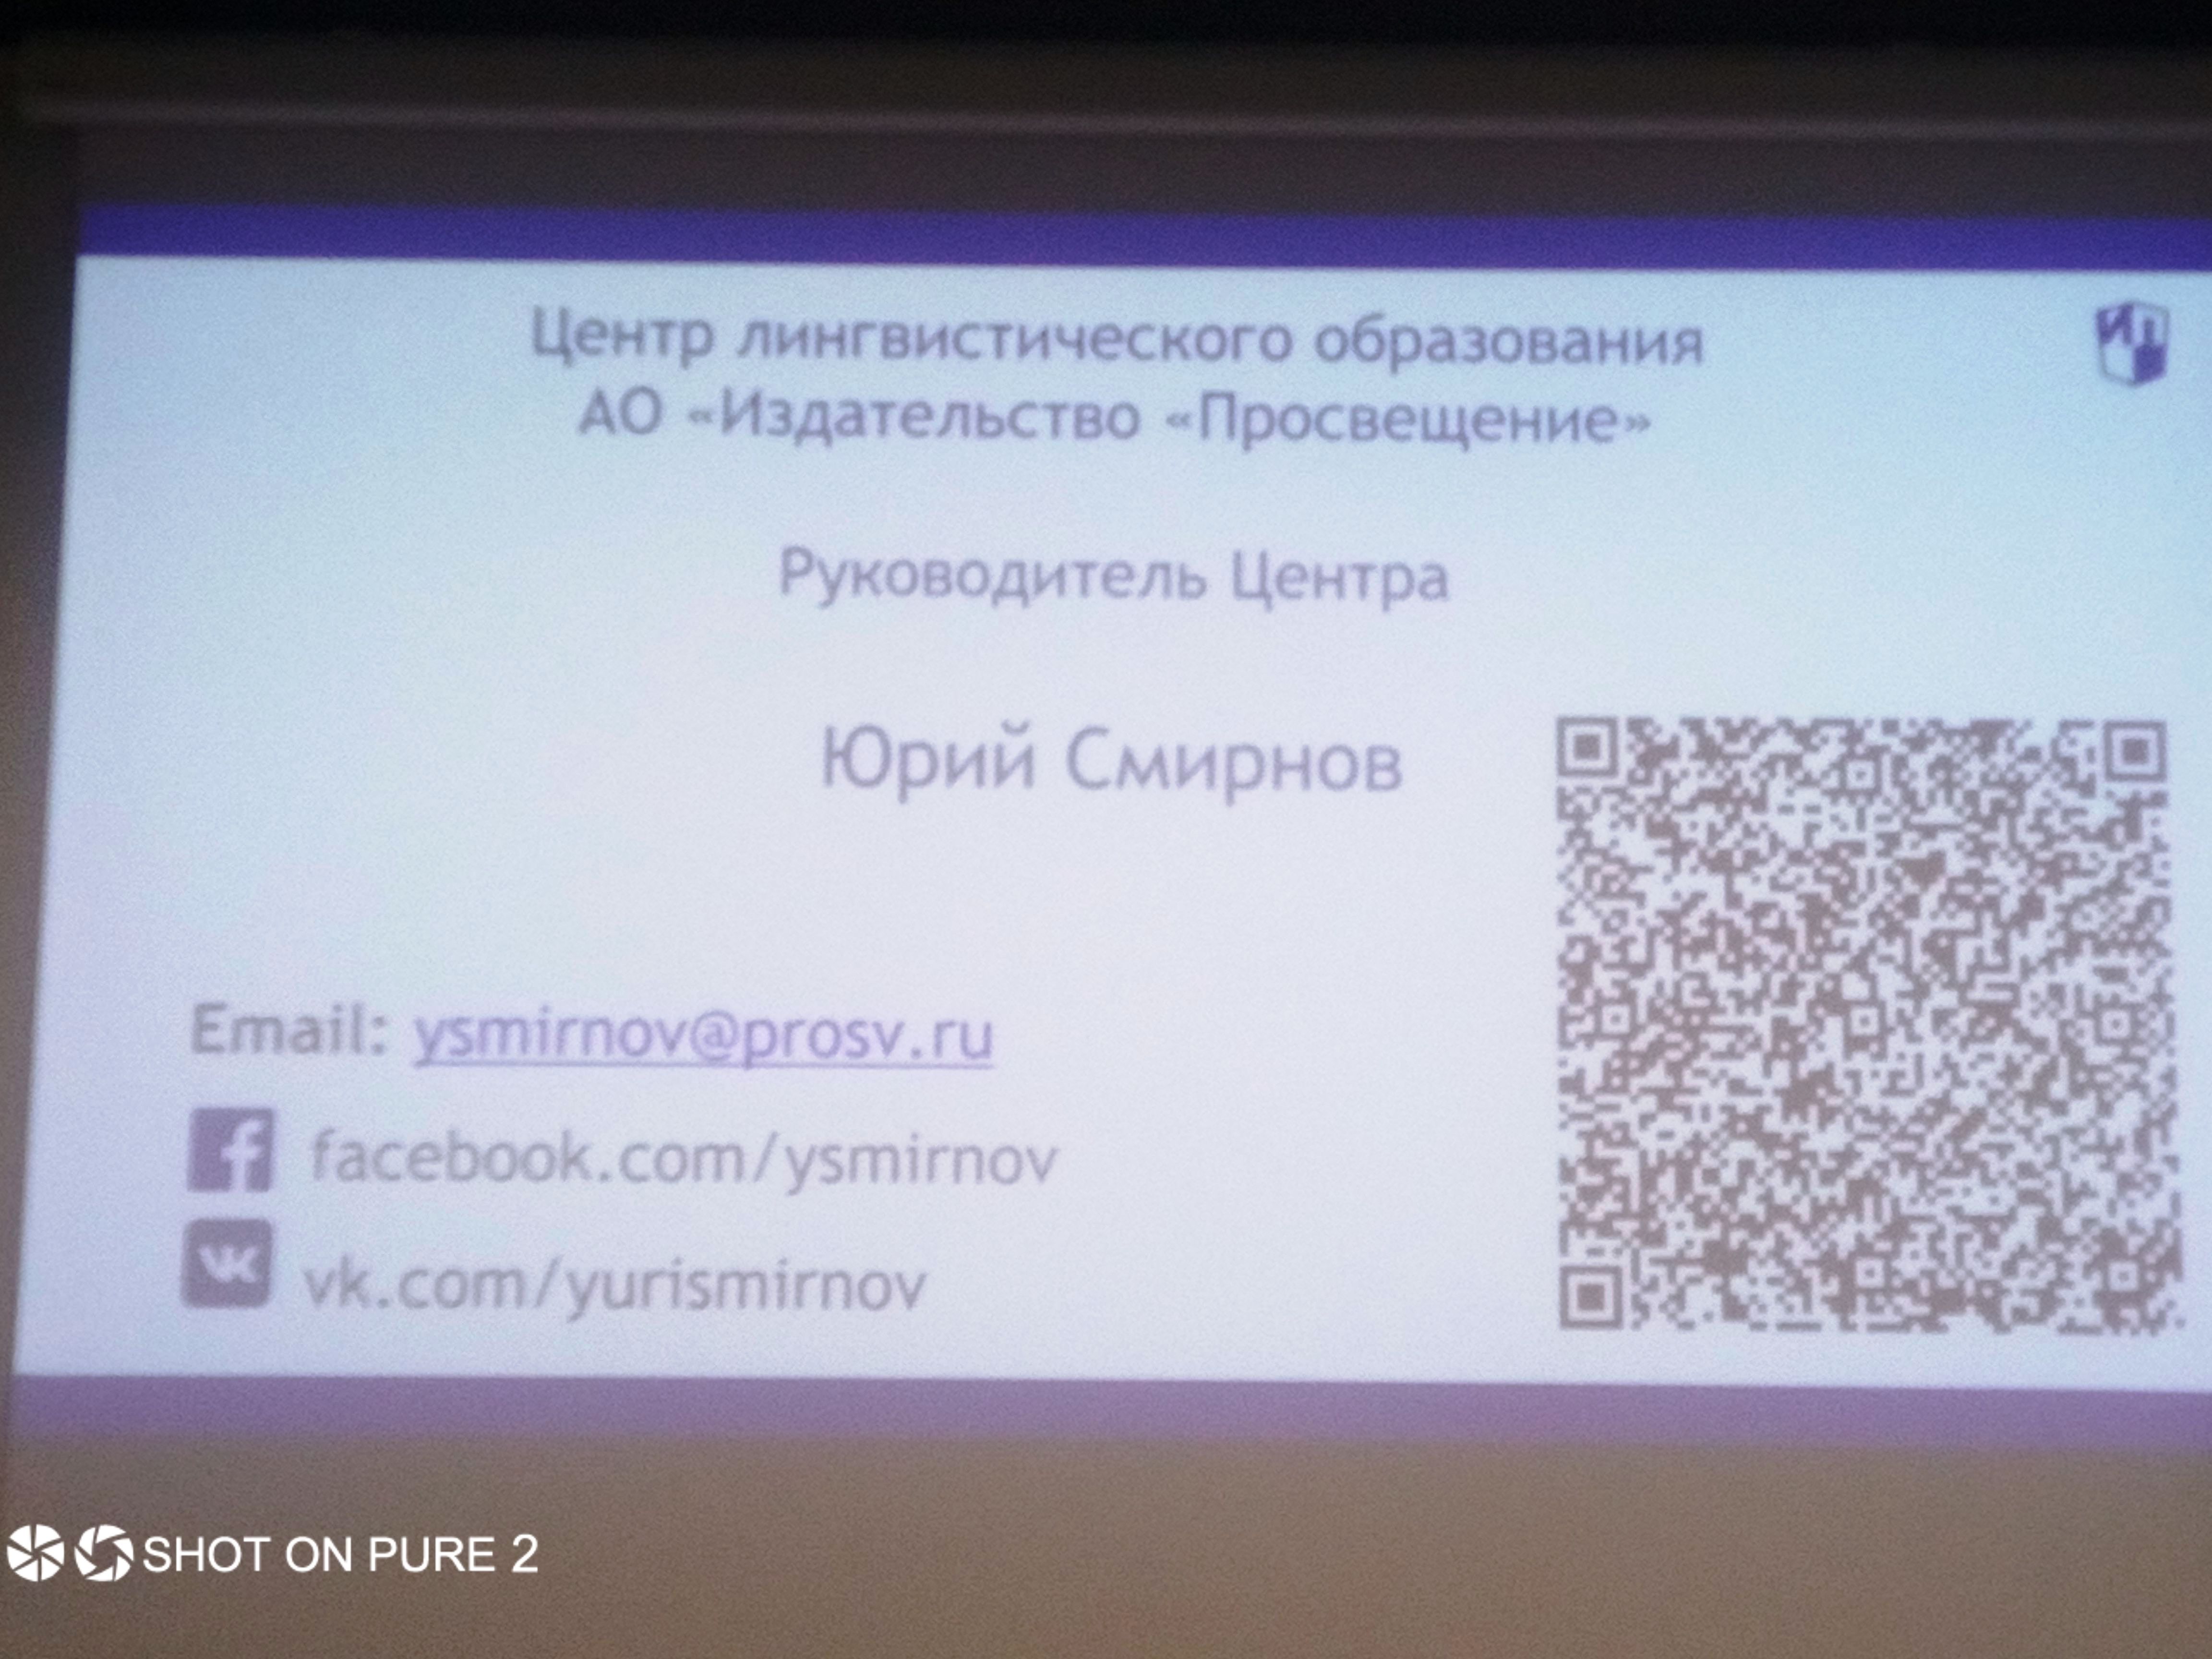 Научно-методическая конференция с участием Смирнова Ю. А. 12 февраля 2019 (1)